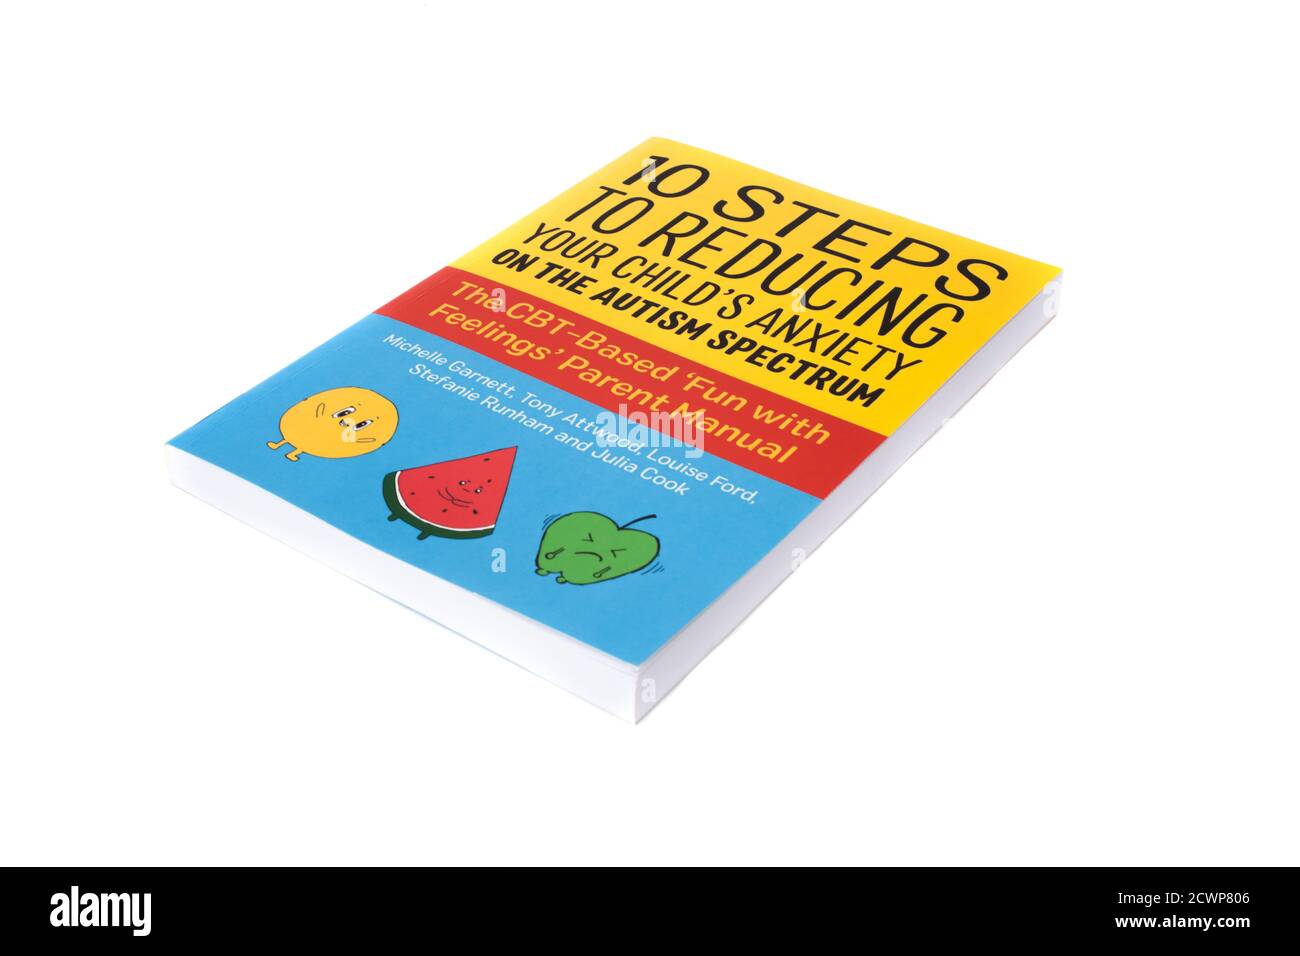 Das Buch, 10 Schritte zur Verringerung der Angst Ihres Kindes auf dem Autismus-Spektrum Stockfoto